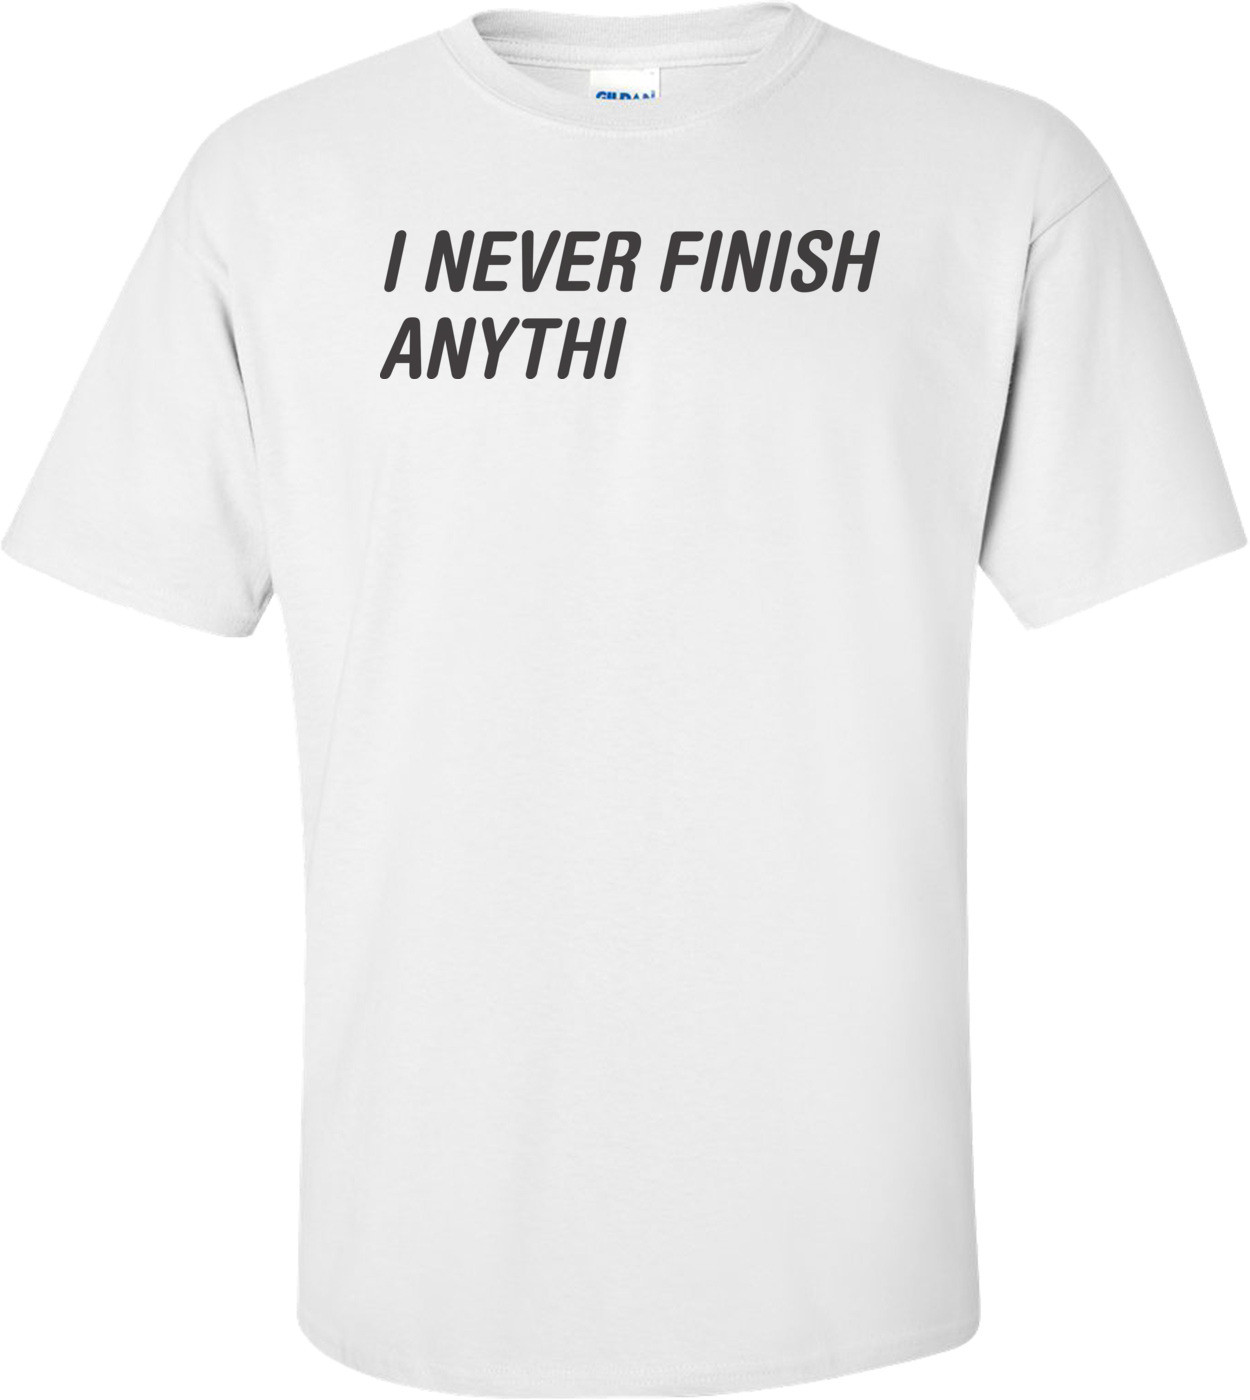 I Never Finish Anythi 